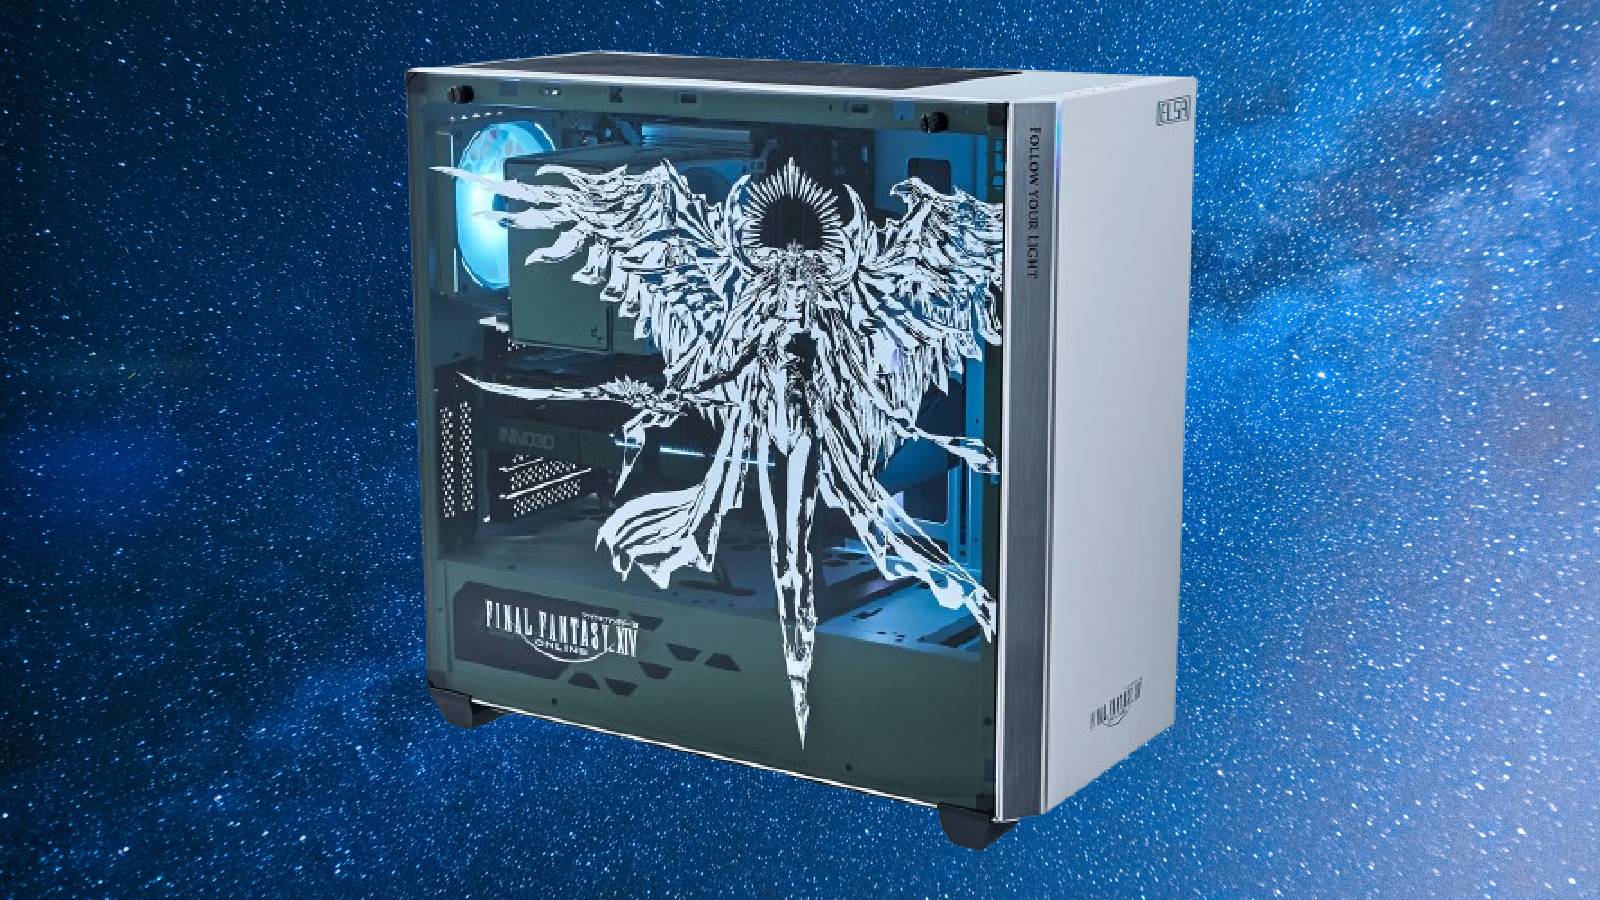 FFXIV PC featuring artwork of Hydaelyn